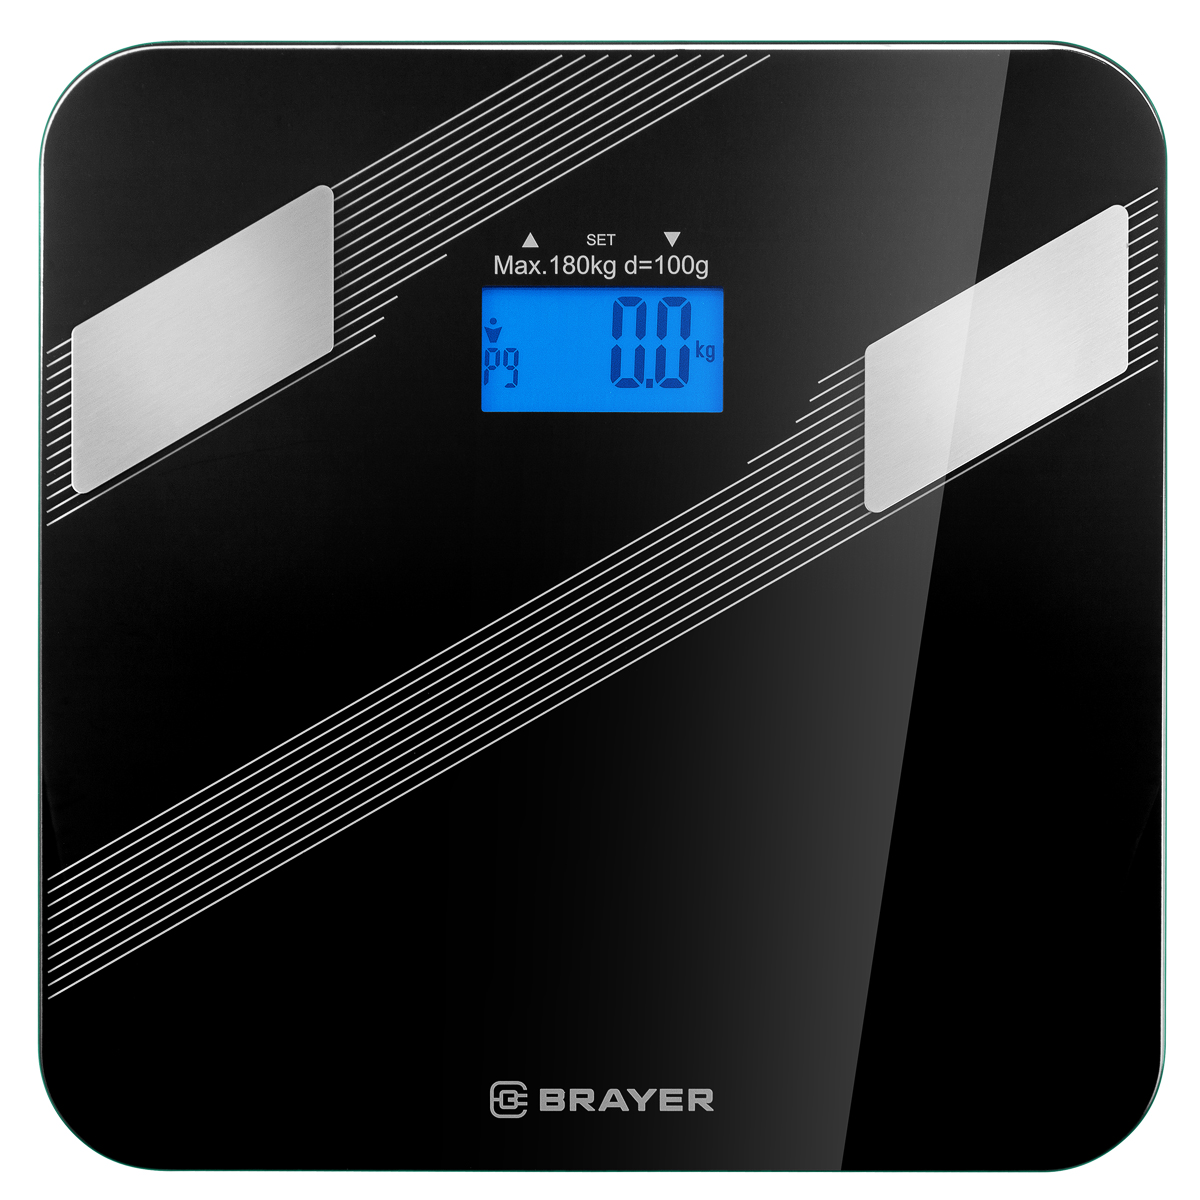 Весы напольные BRAYER BR3734